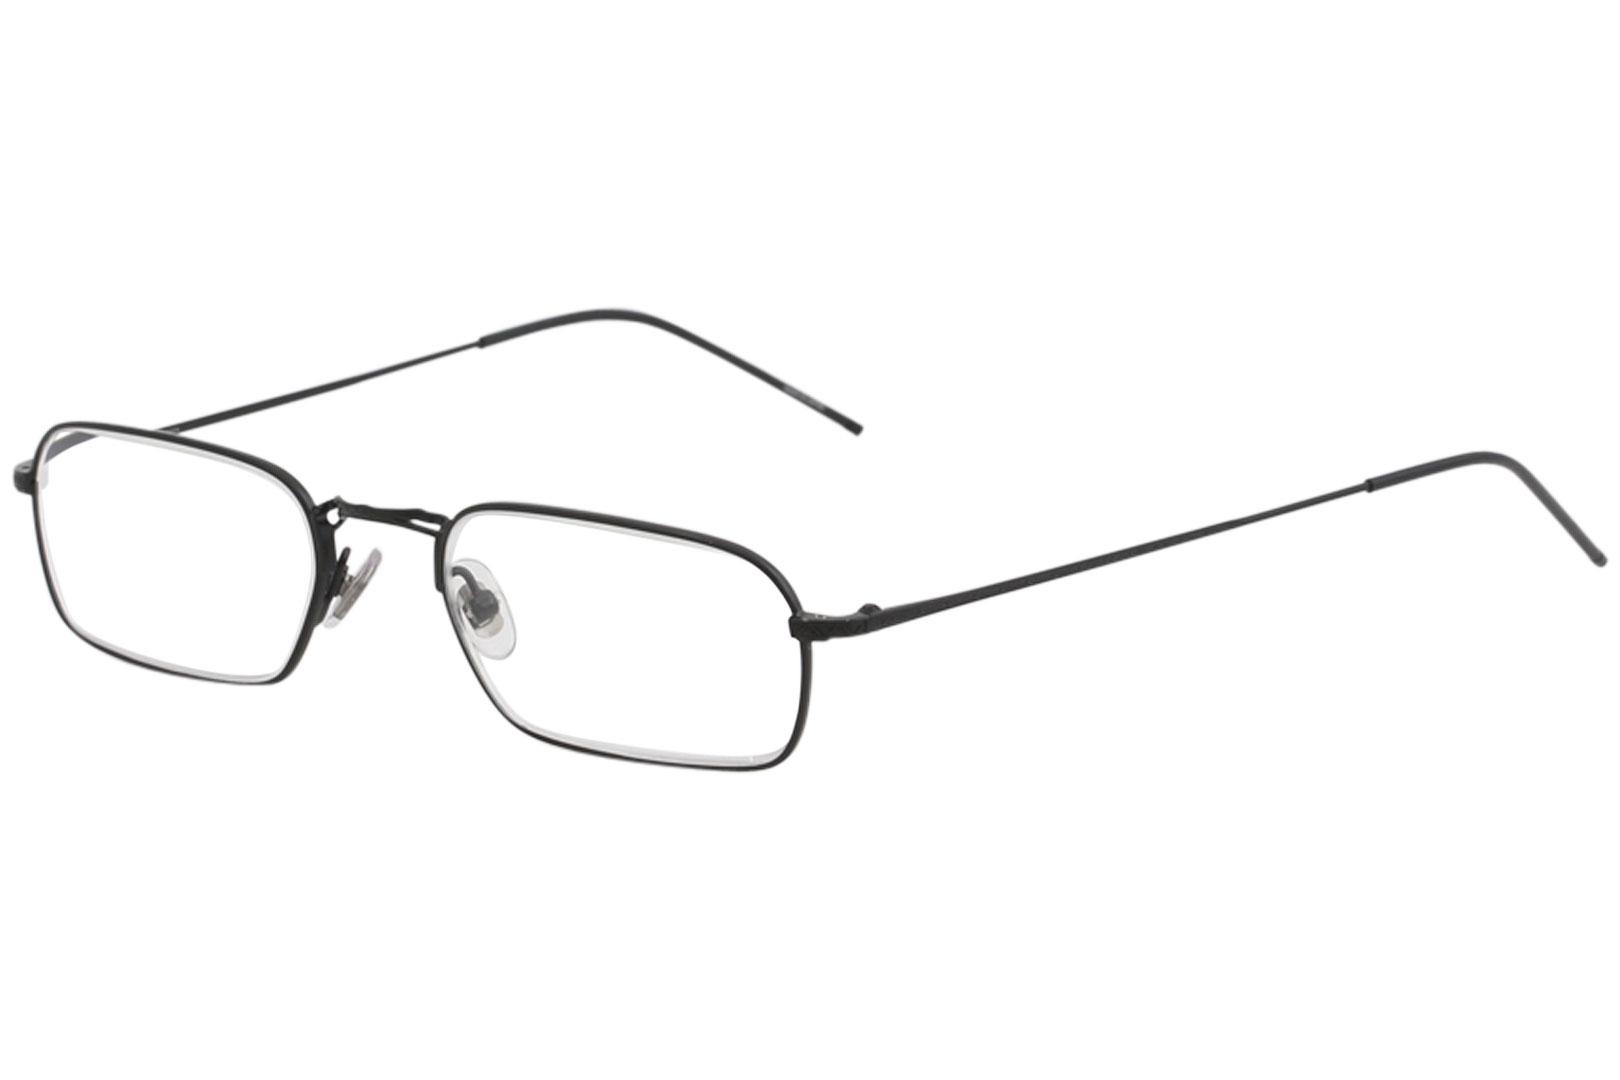 John Varvatos Men's Eyeglasses V126 V/126 Full Rim Reading Glasses - Black - Strength: +2.00; Lens 52 Bridge 19 Temple 145mm